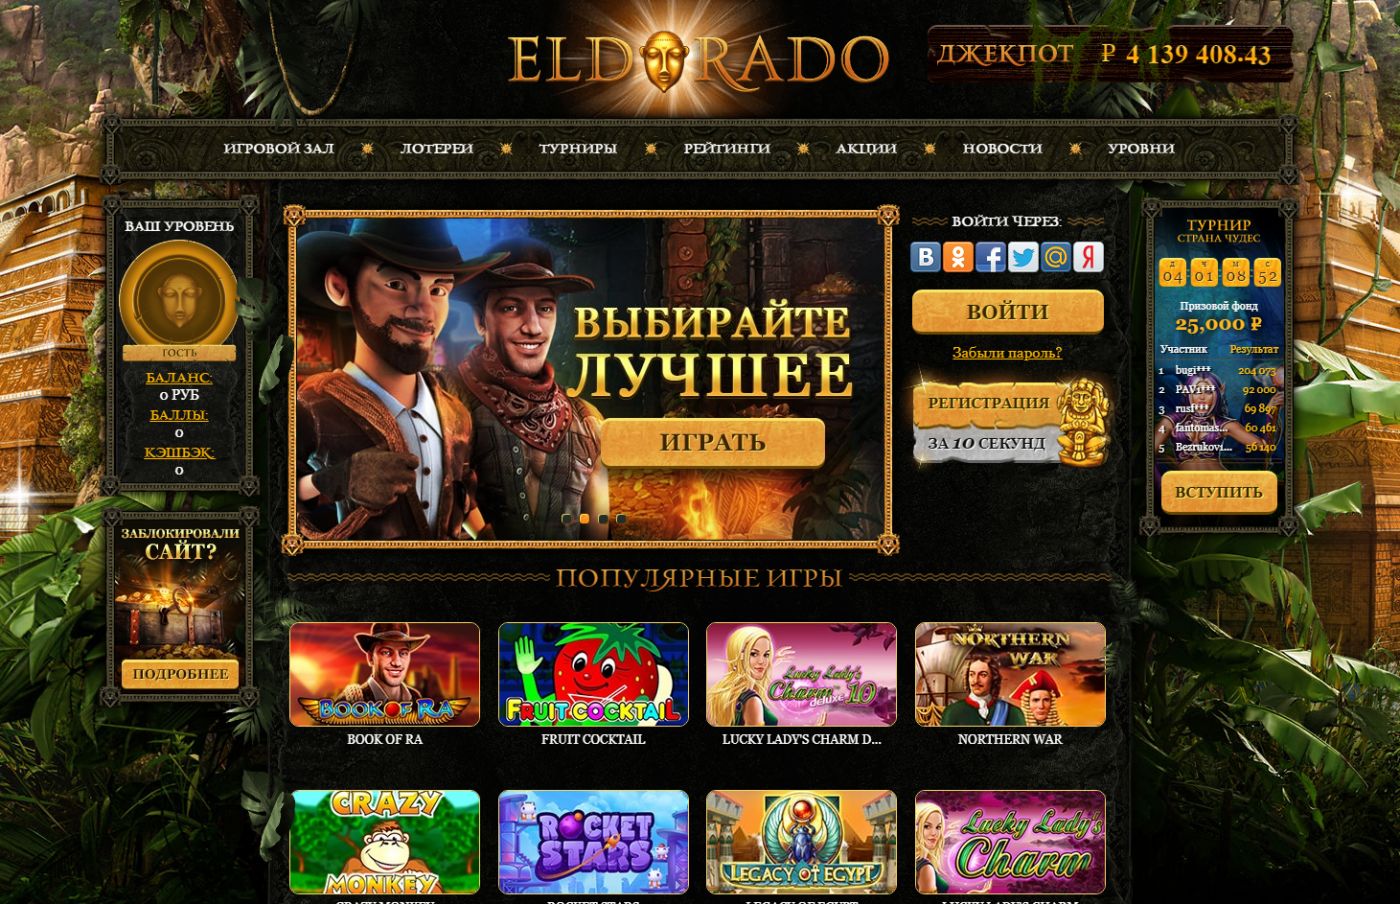 Эльдорадо казино онлайн сайт зеркало азино777 бонус при регистрации 777 рублей скачать